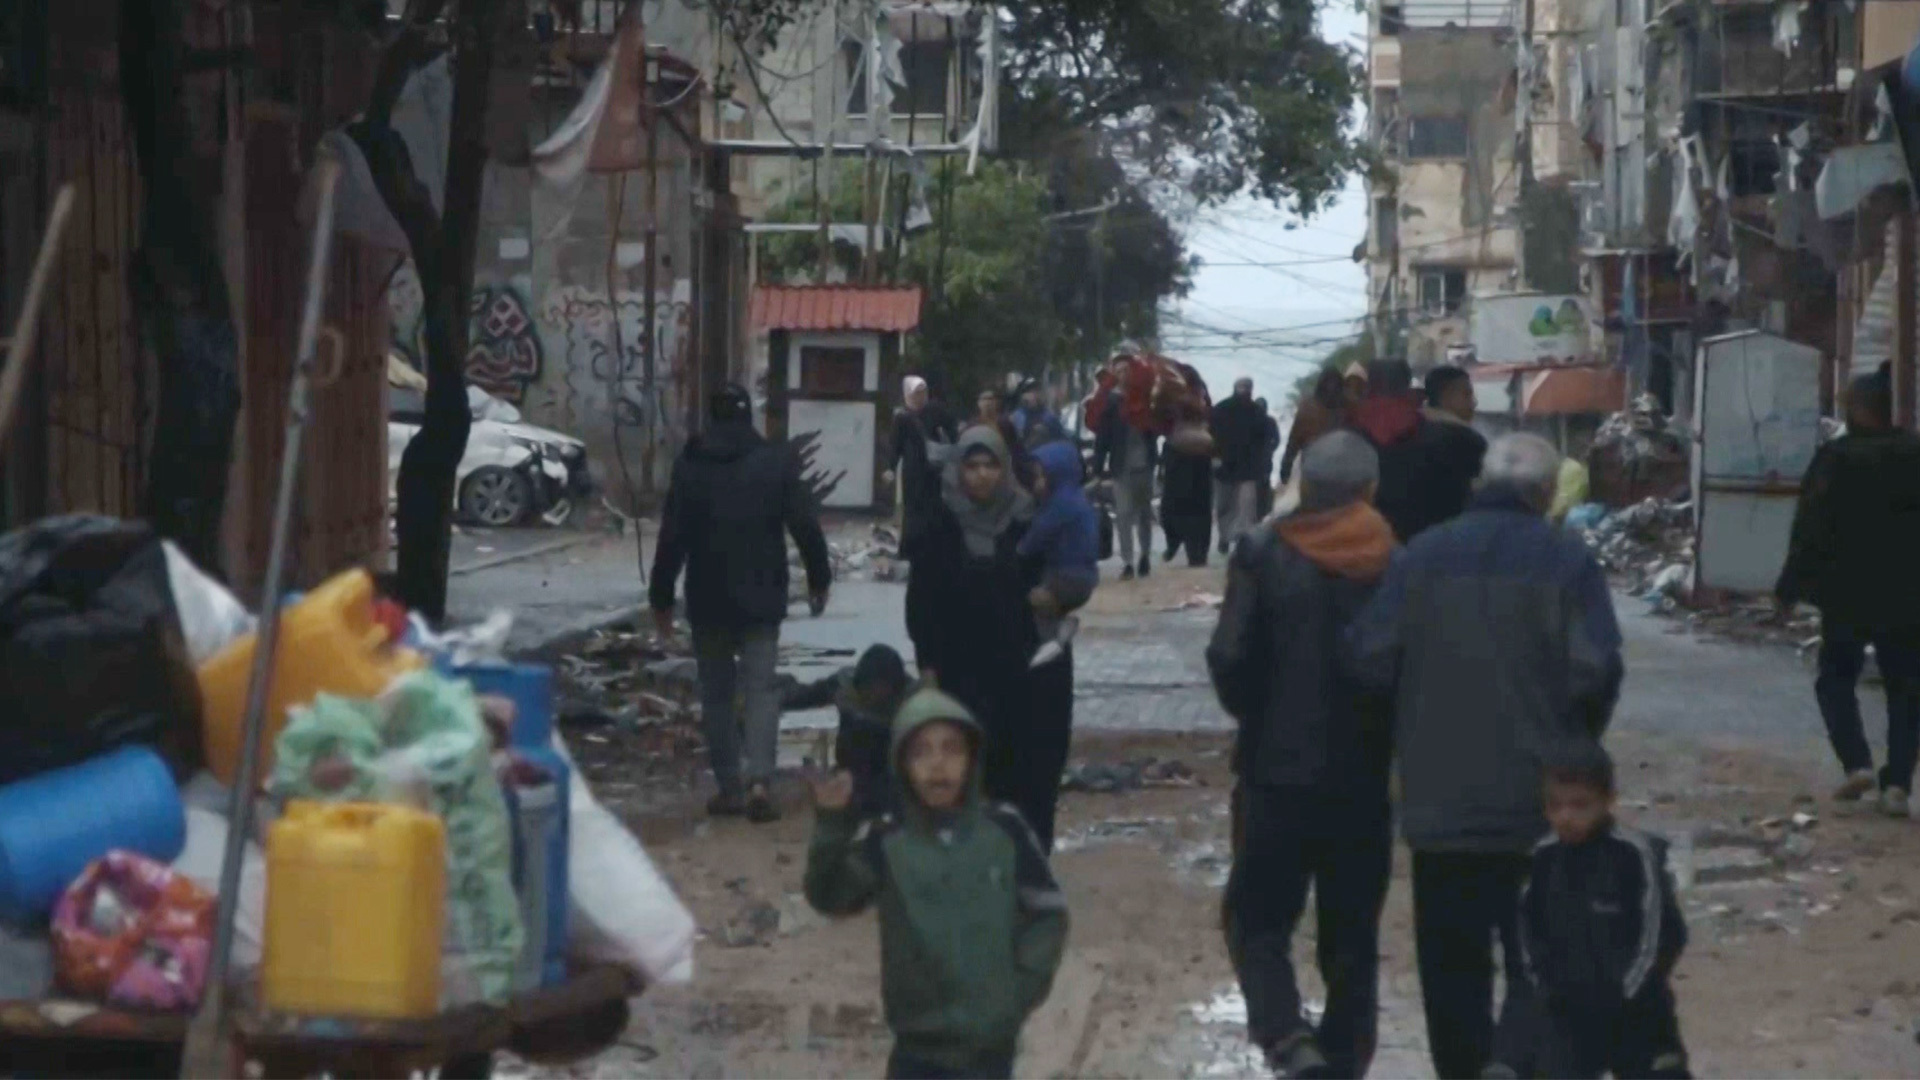 أهالي مخيم الشاطئ يبحثون عن ملاذ آمن بعد قصف الاحتلال منازلهم | البرامج – البوكس نيوز